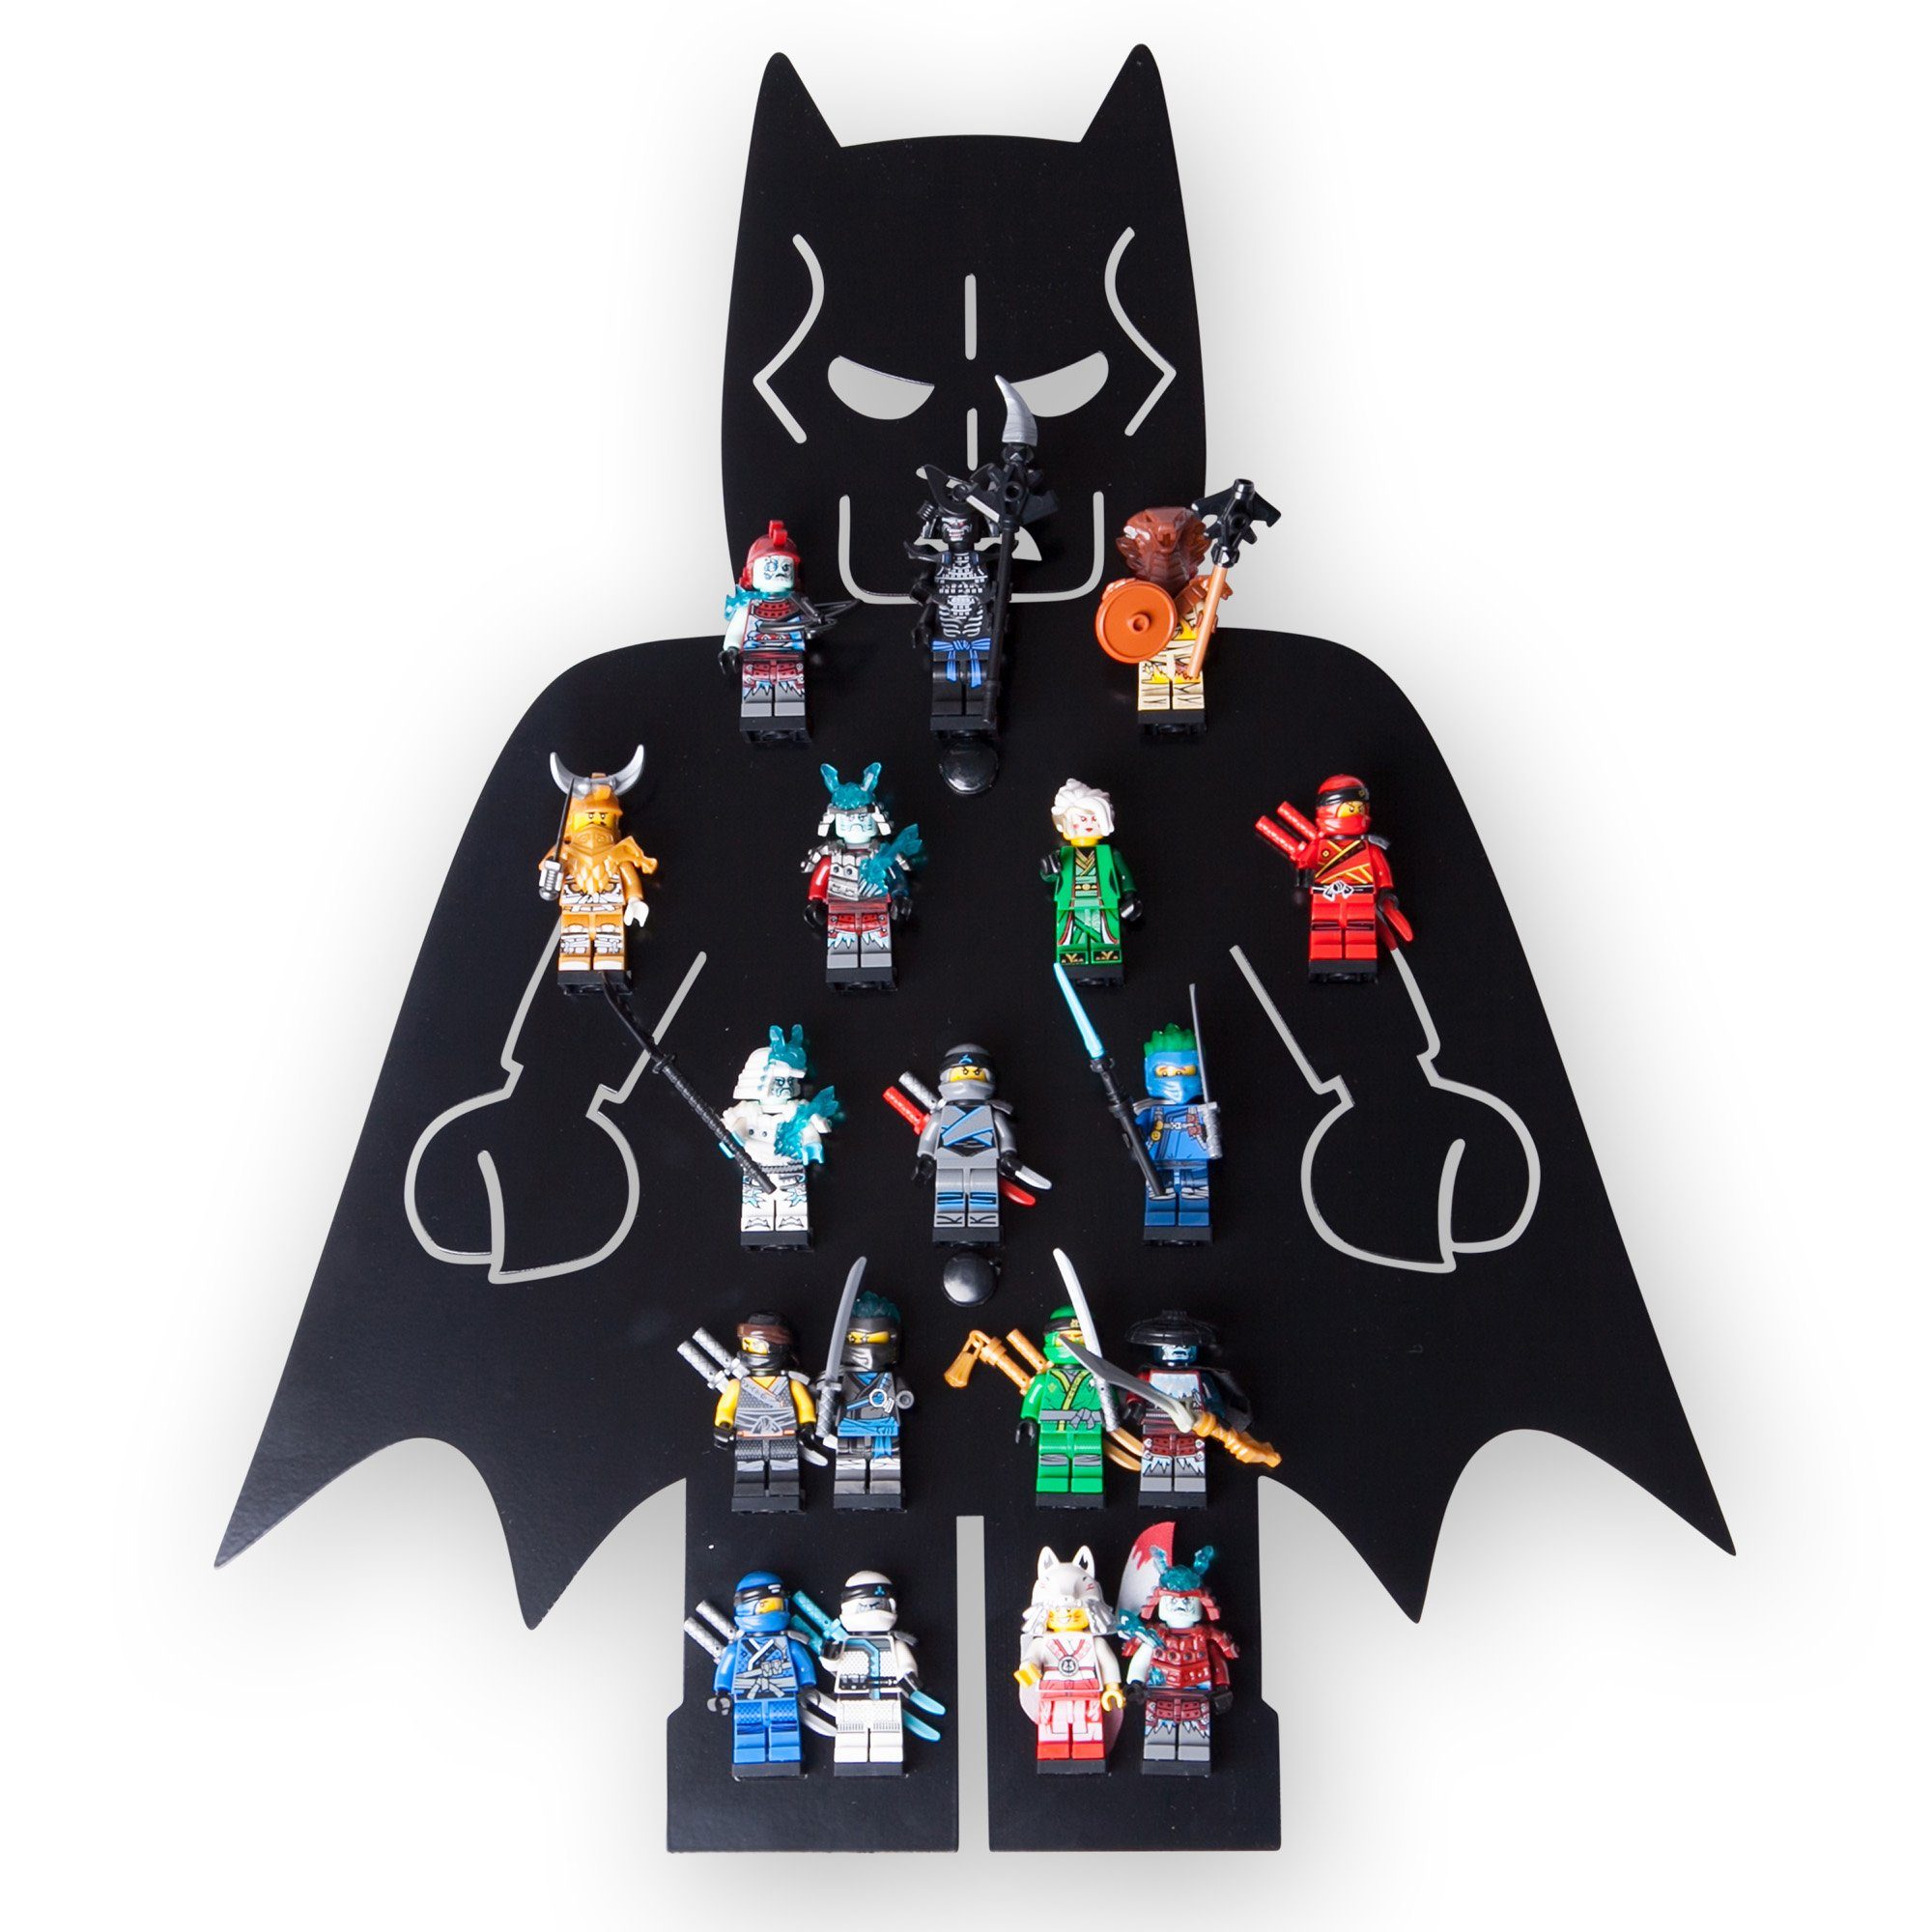 Batman moin für Minifiguren Kinderzimmer 18 moin Klemmbaustein Regal Wandregal minis minis